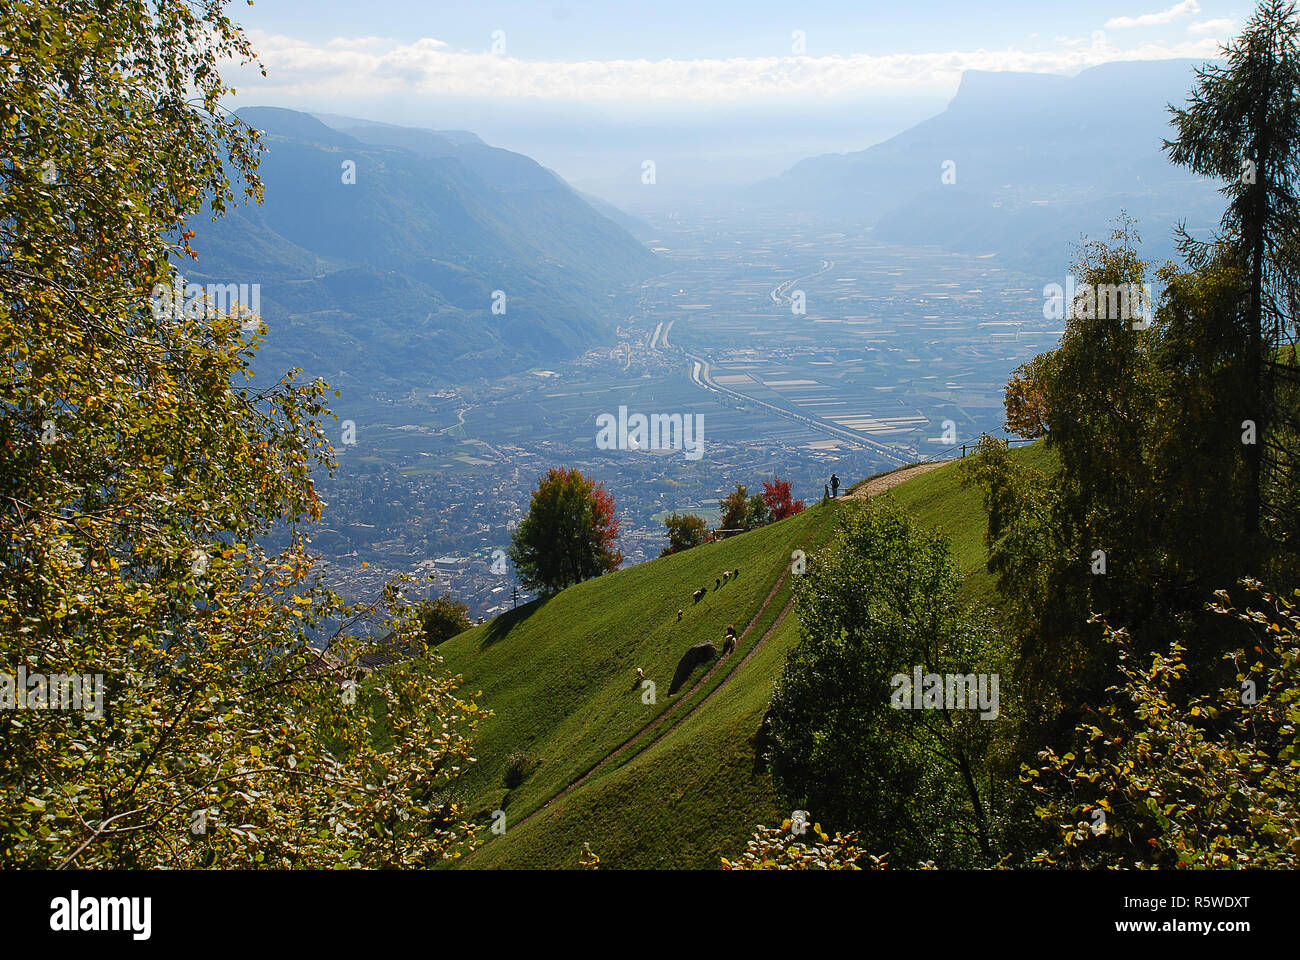 Vue panoramique sur les vallées et les montagnes (Alpes Ortler) dans les Alpes italiennes debout à la station de téléphérique Hochmuth (Meran, le Tyrol du Sud, Italie) Banque D'Images